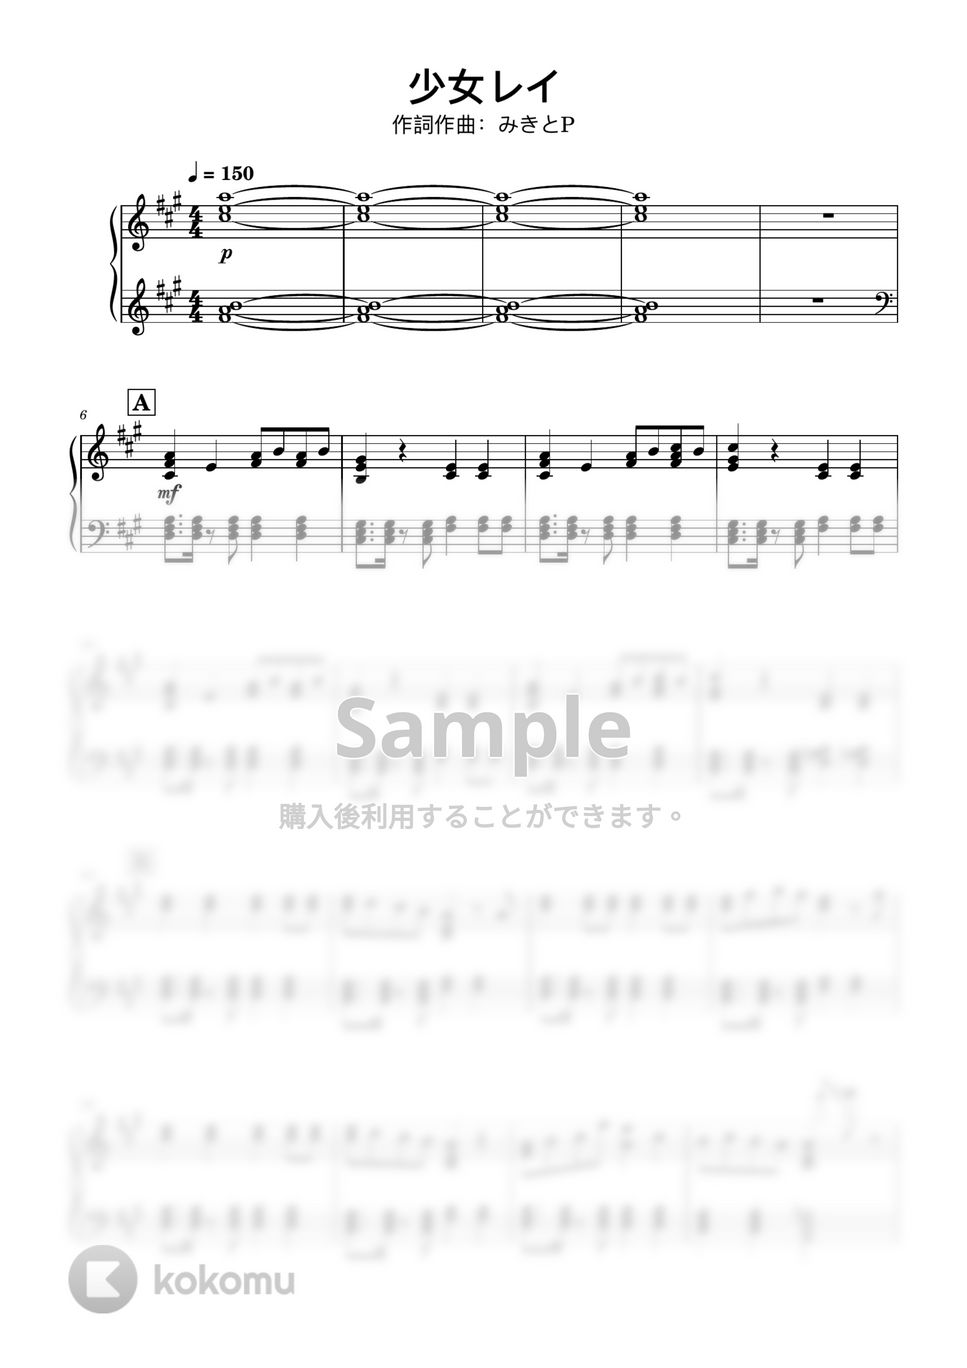 みきとP - 少女レイ (ピアノソロ中級〜上級) by Degenerate / デゲ